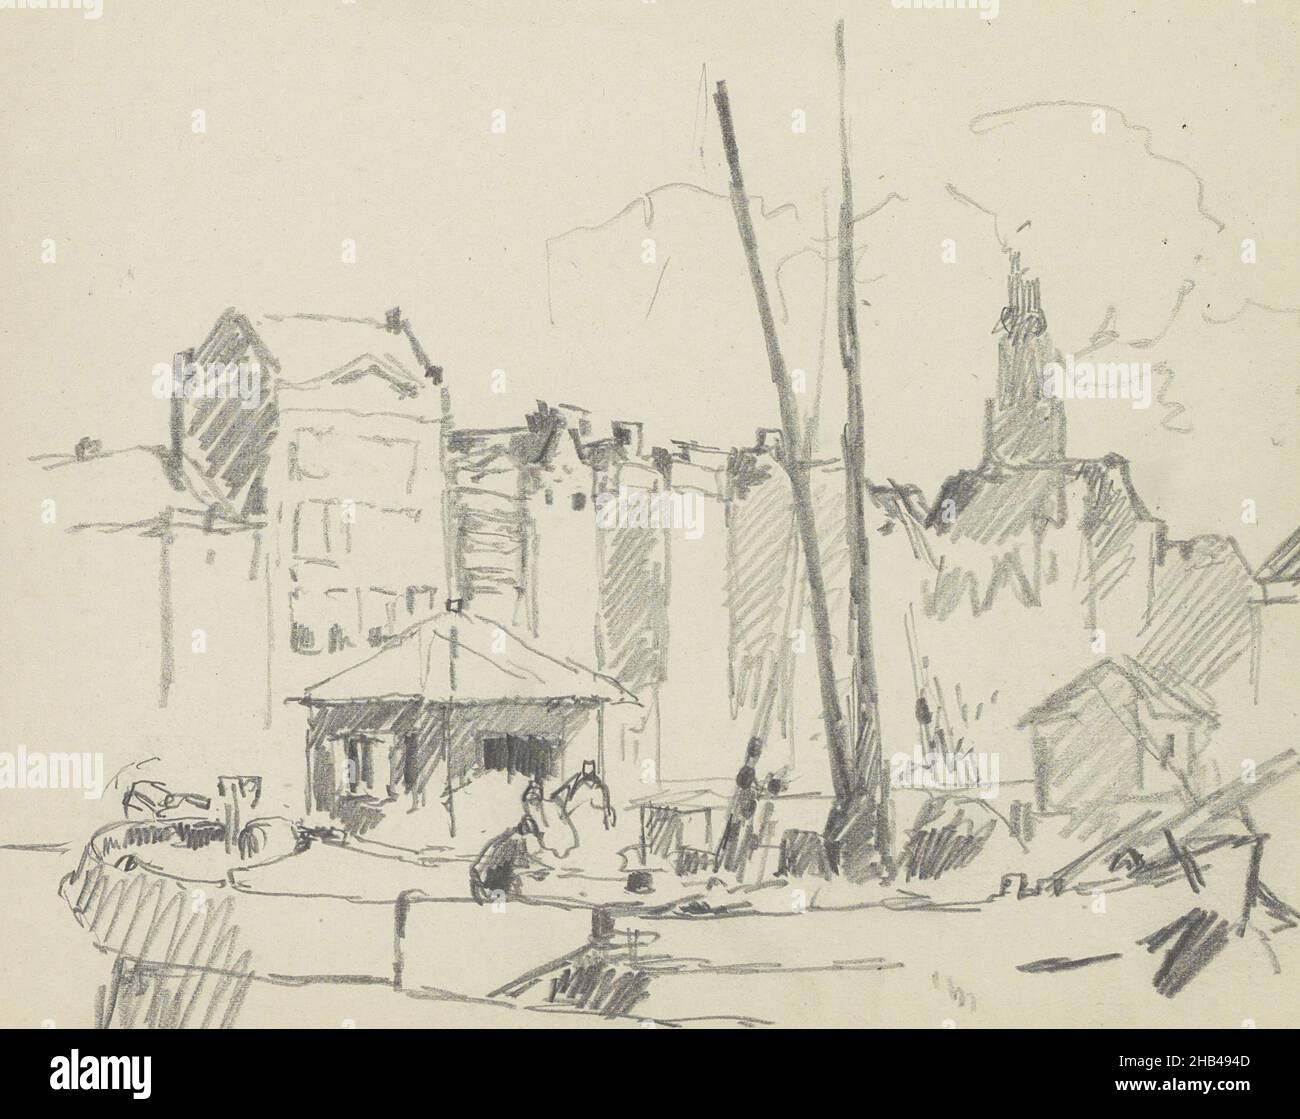 Seite 69 Rekto aus einem Skizzenbuch mit 76 Seiten, Rückfassaden von Häusern an der Warmoesstraat in Amsterdam., Cornelis Vreedenburgh, 1890 - 1946 Stockfoto